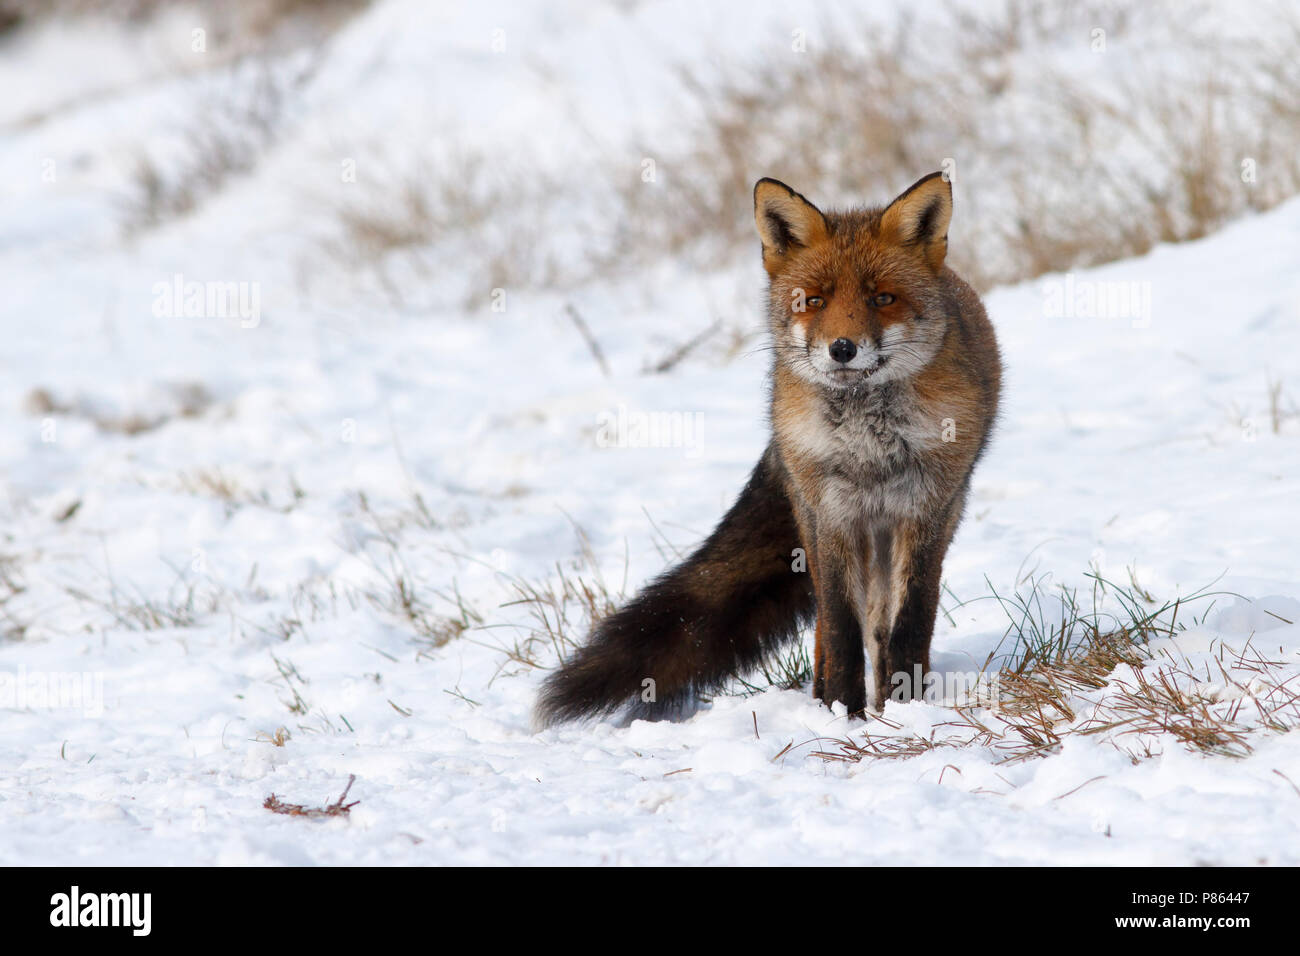 vos in de sneeuw, red fox in snow Stock Photo